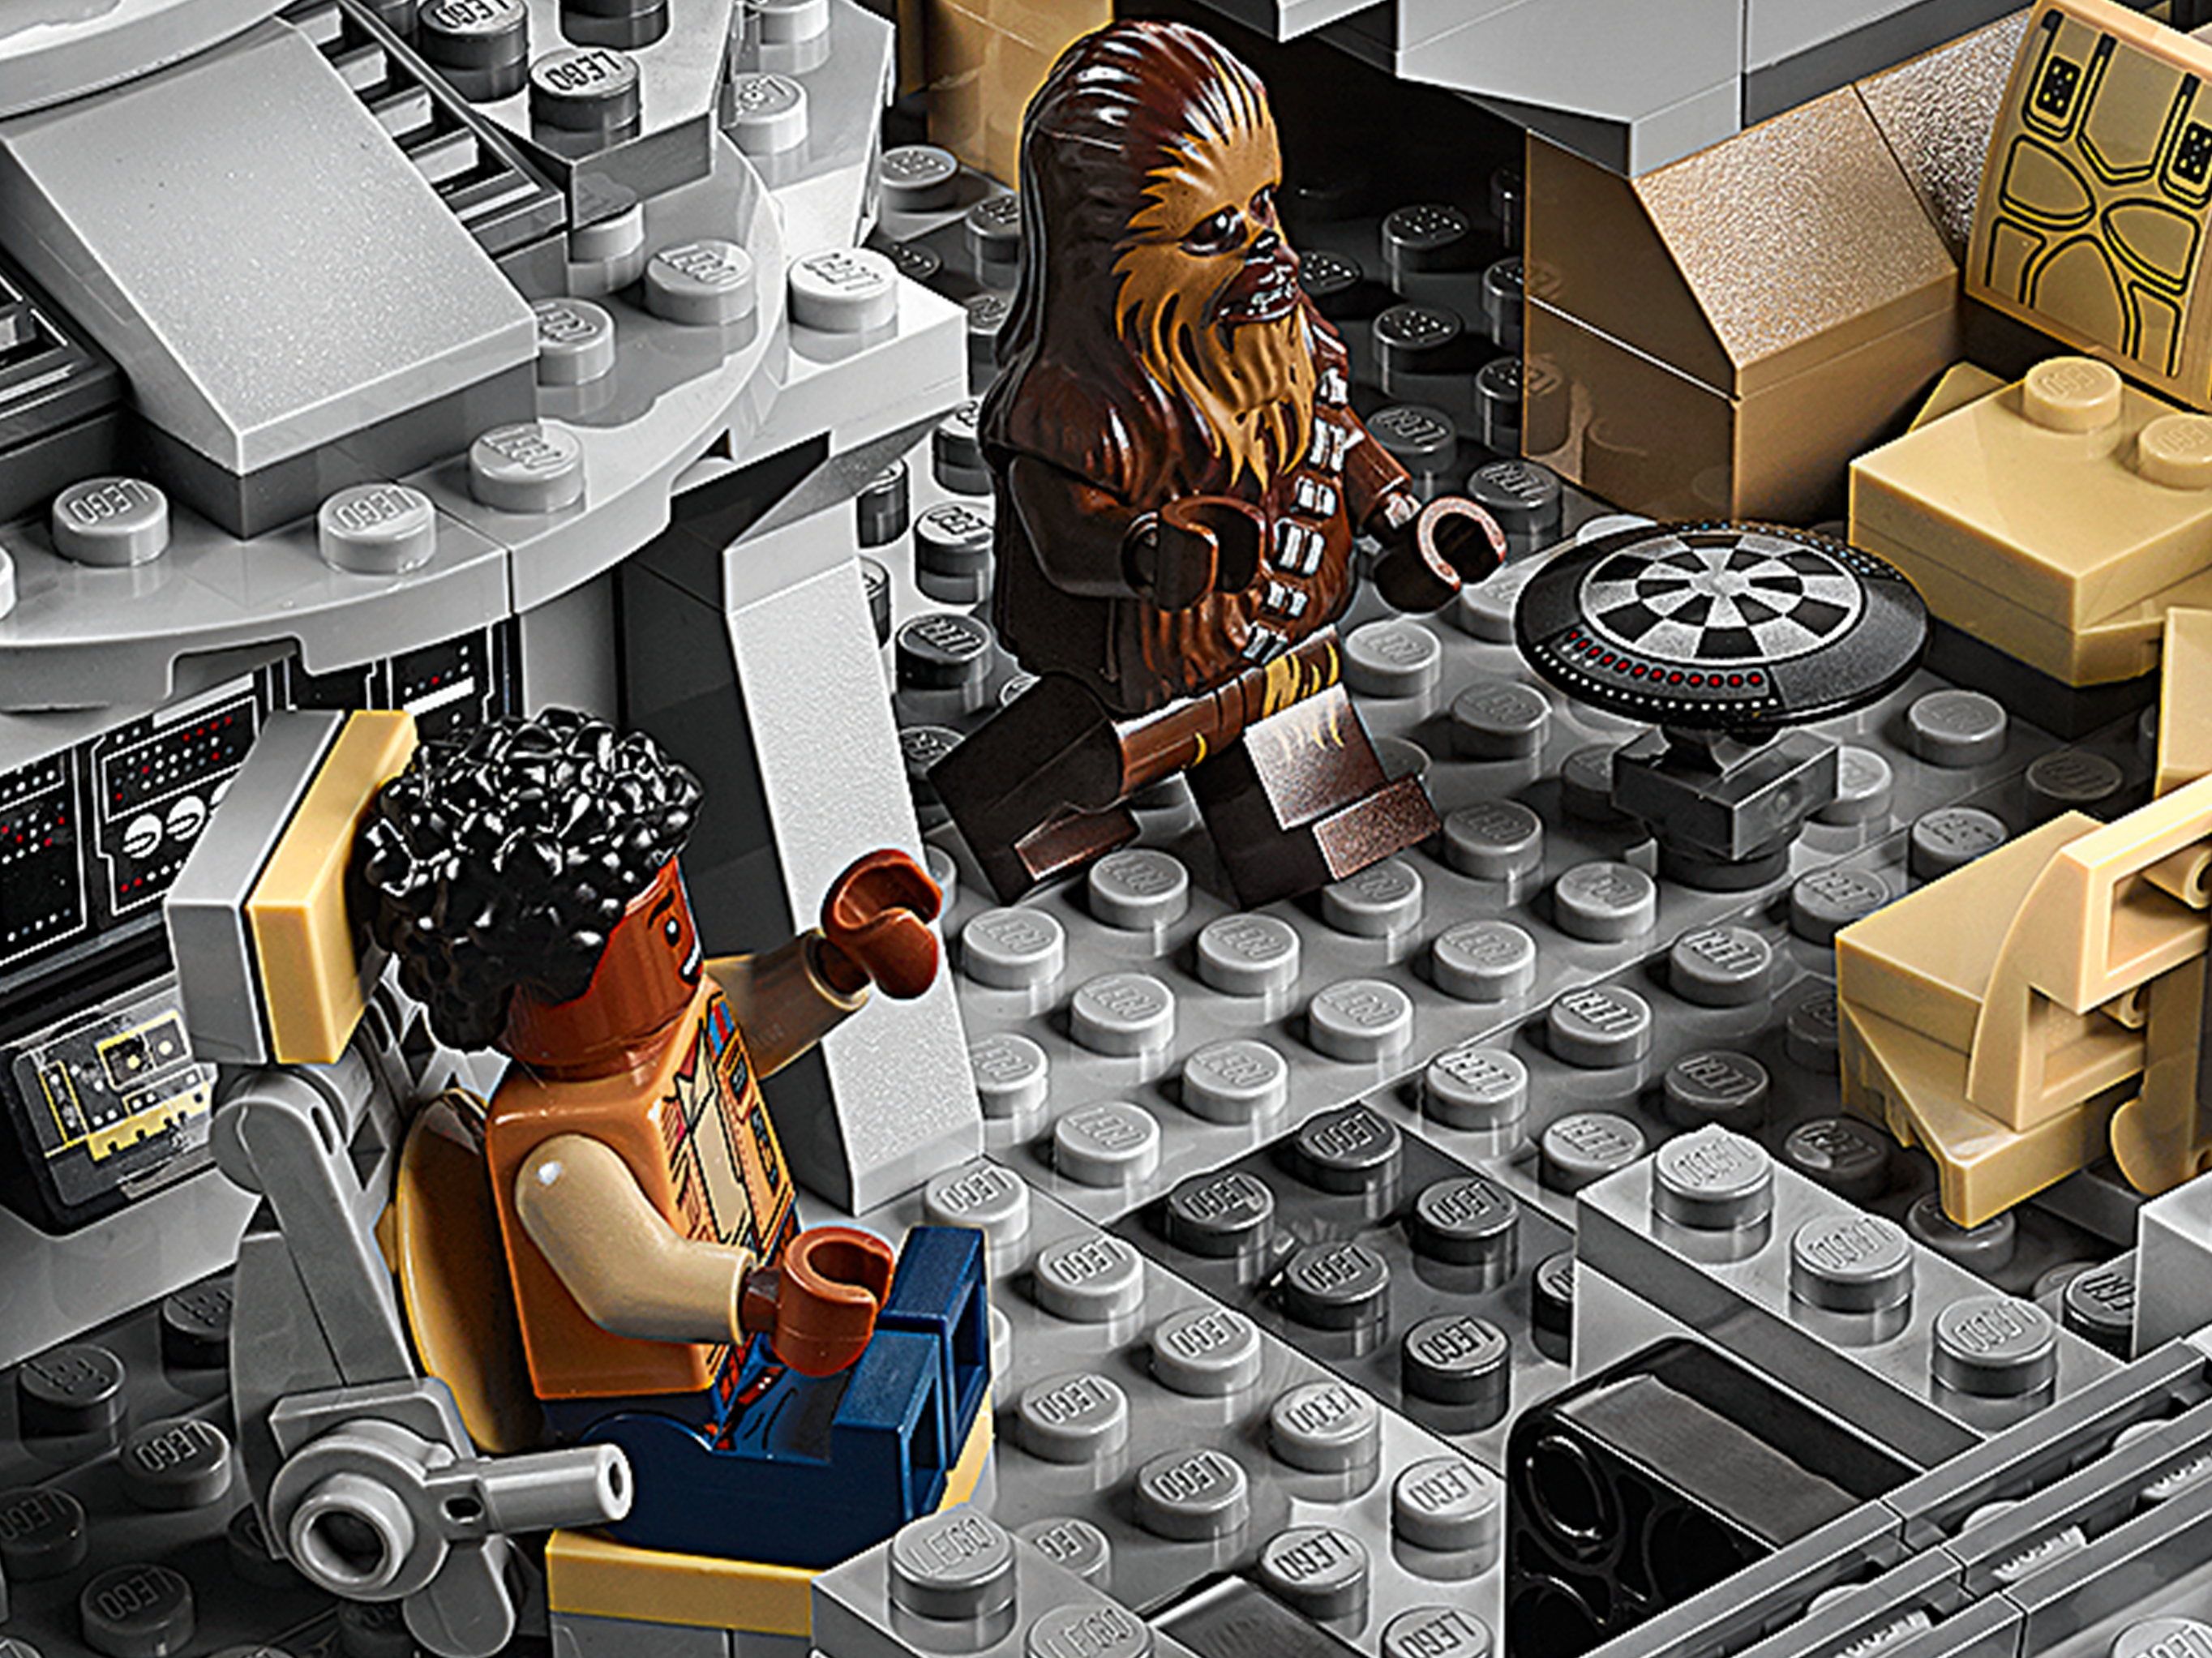 Lego 75257 Star Wars Millennium Falcon Raumschiff Bauset  Finn Chewbacca Lando C 